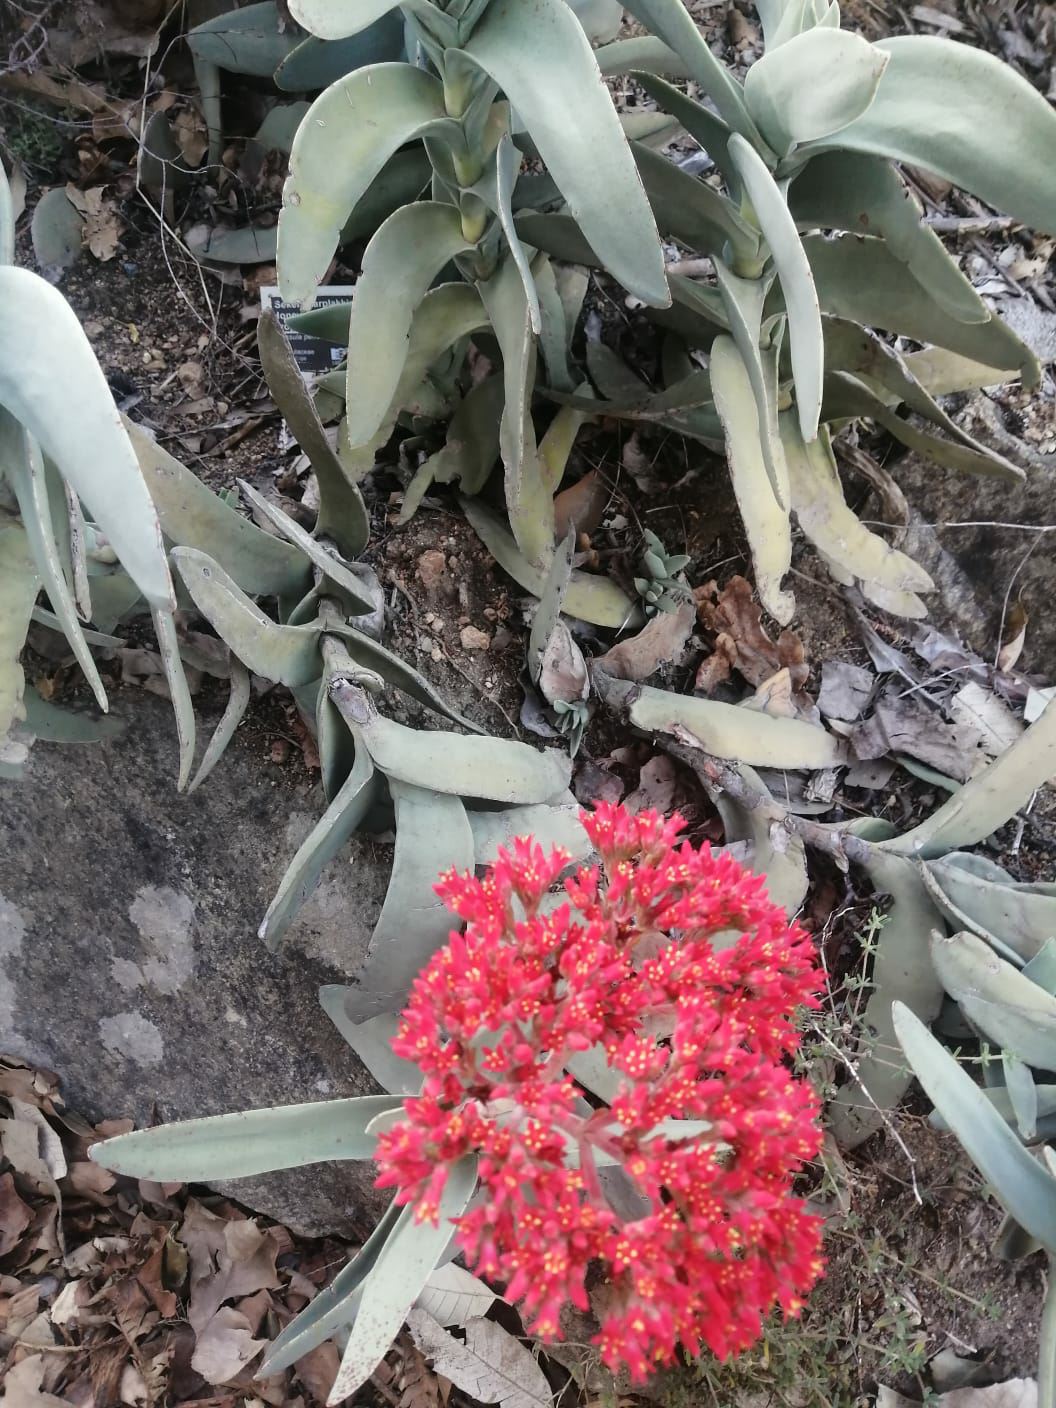 Crassula perfoliata - Rooiplakkie, Sekelblaarplakkie, Sekel-crassula, Honey crassula, Propeller plant, Red treasure, Scarlet paintbrush, Sickle crassula